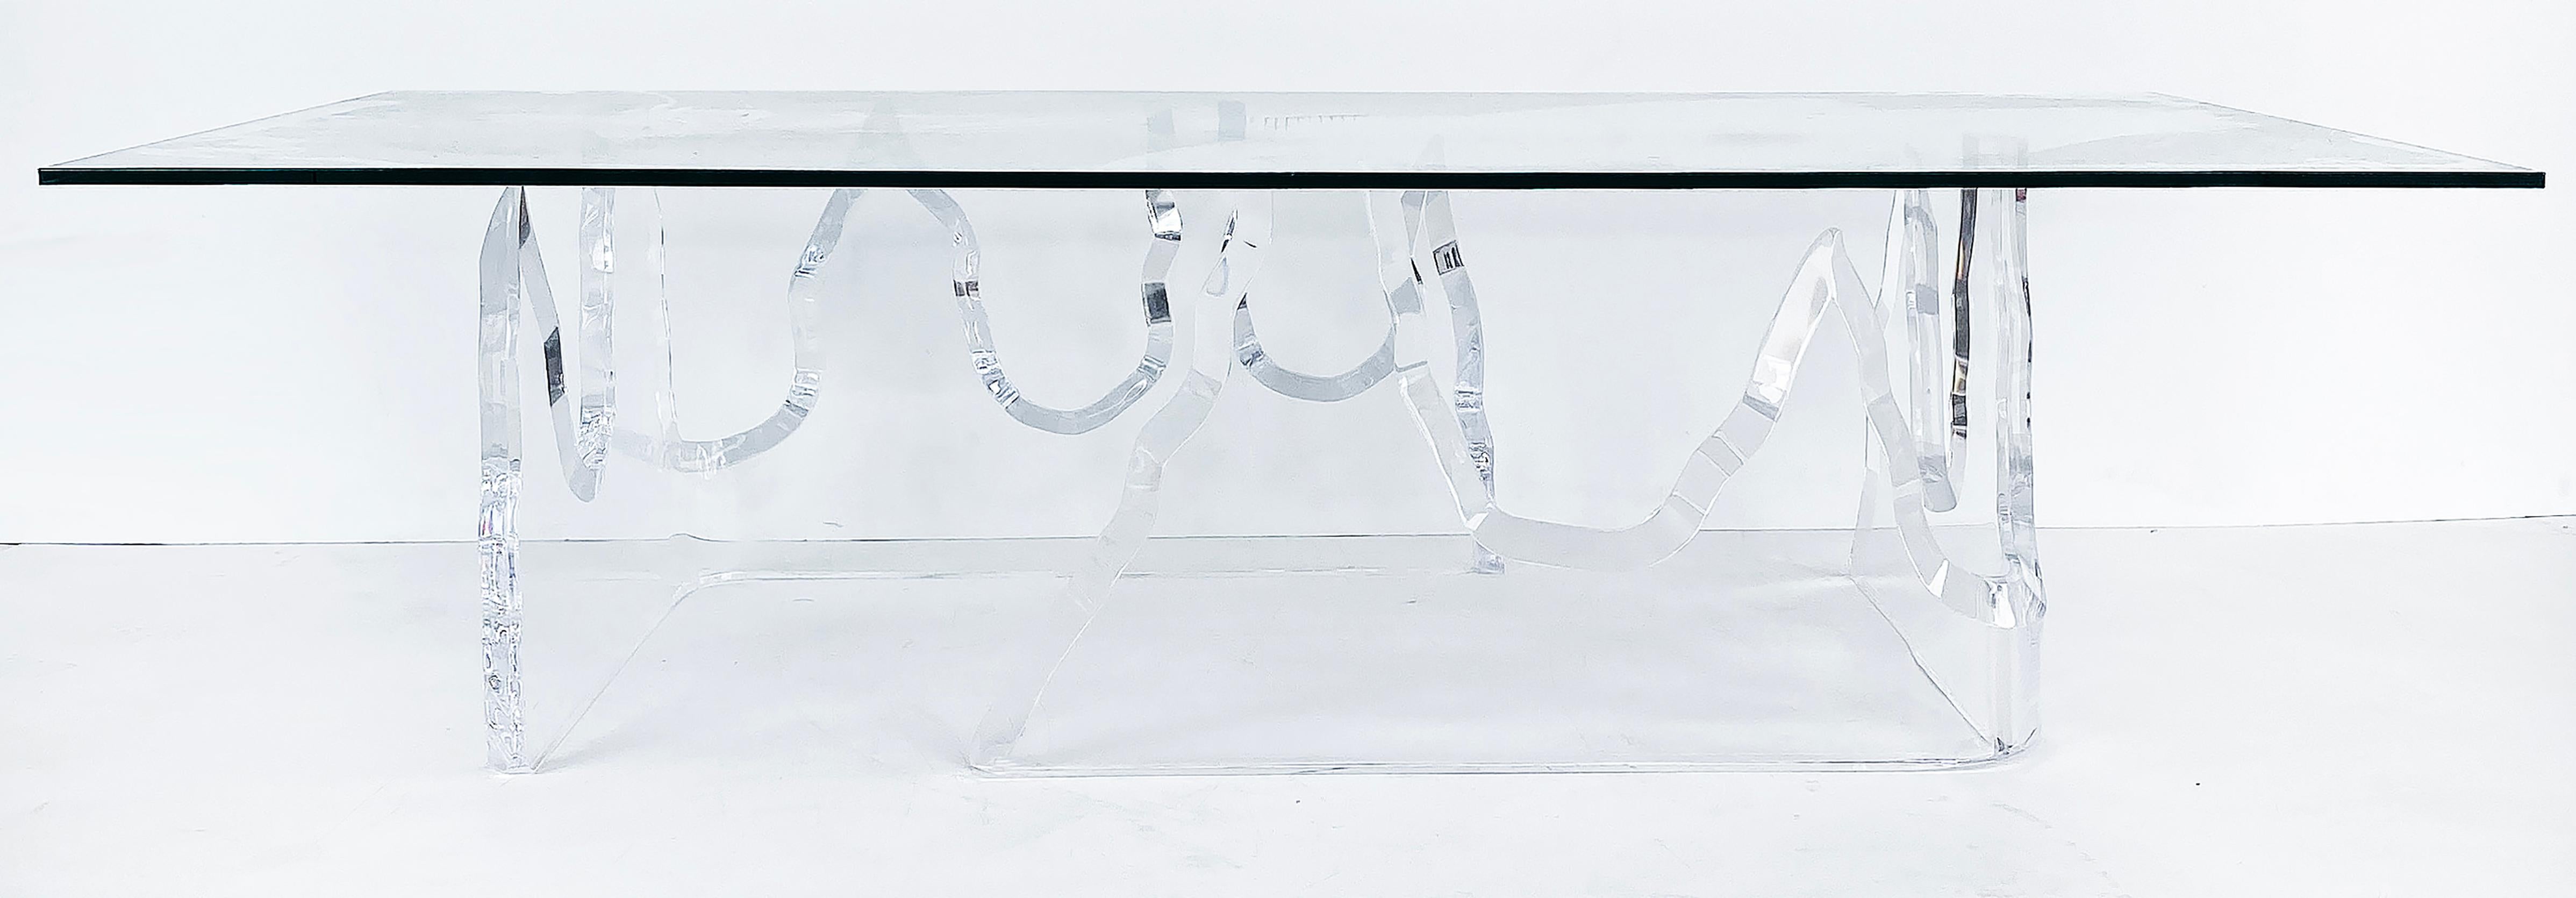 Table basse en Lucite Lion in frost avec plateau en verre.

Nous proposons à la vente une table basse en Lucite de type lion en givre avec un plateau en verre. La base est en deux sections et le dessus en verre tout neuf a une épaisseur de 3/4